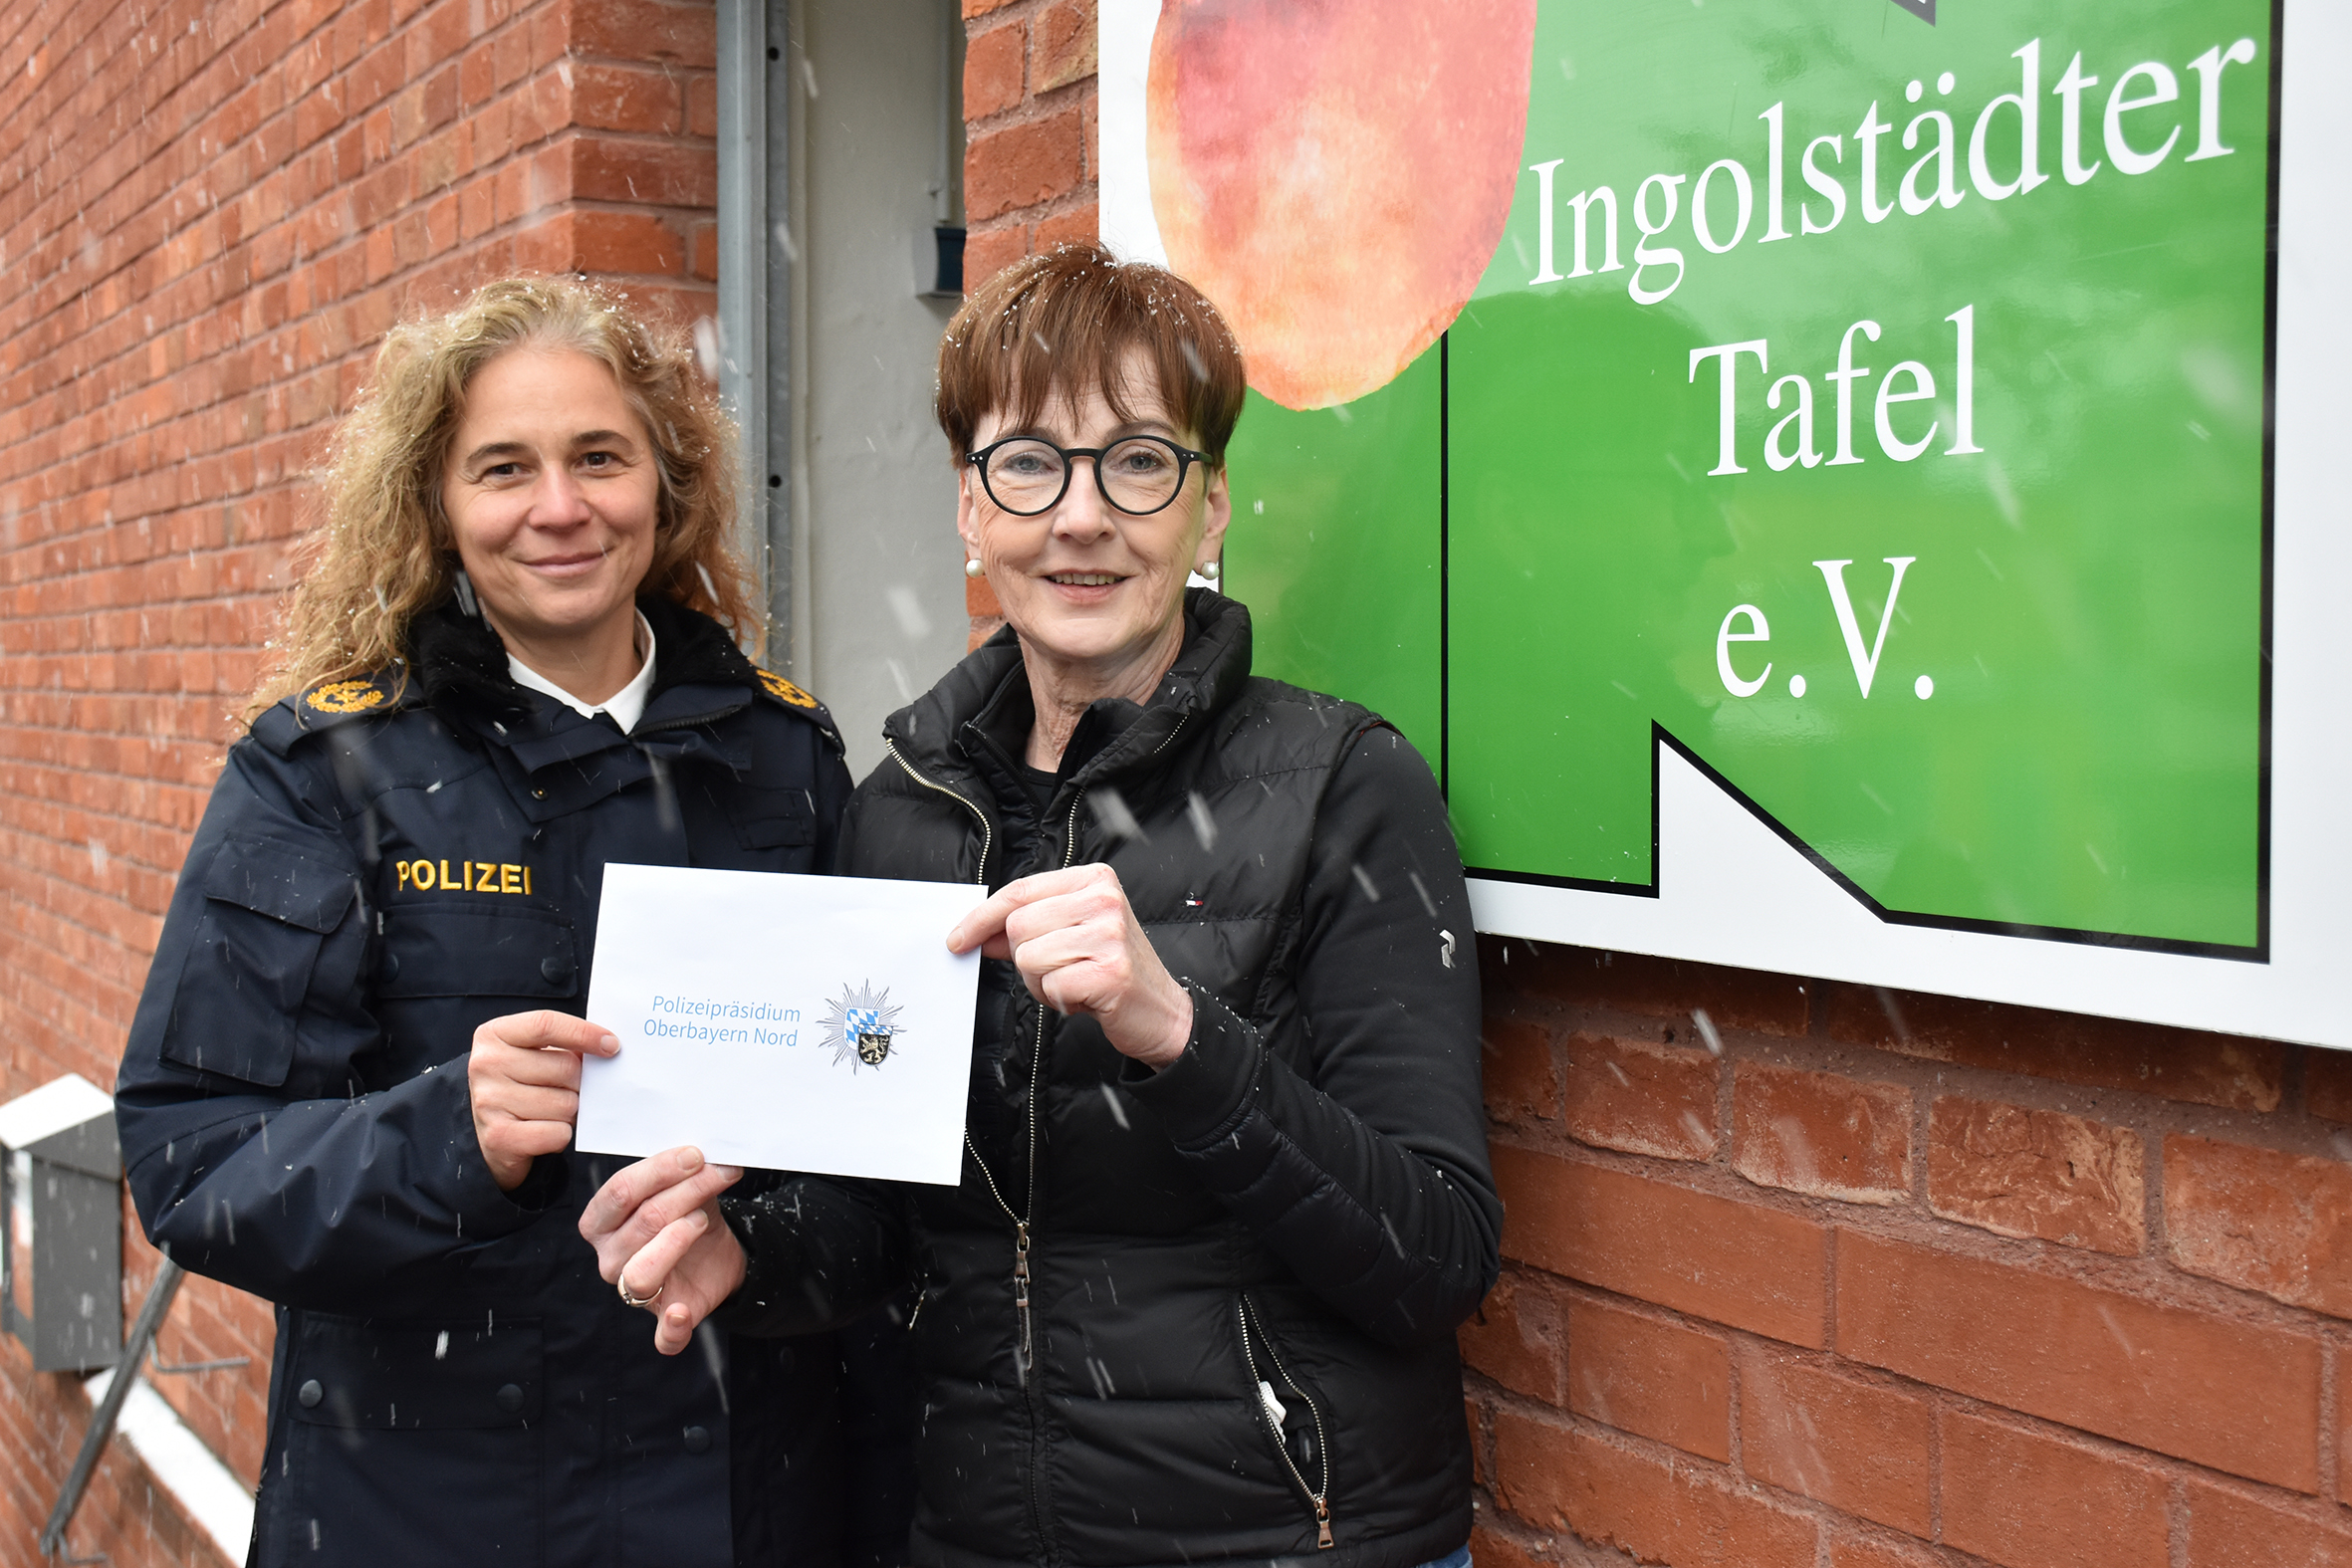 Spendenübergabe Polizeipräsidium Oberbayern Nord an die Tafel Ingolstadt